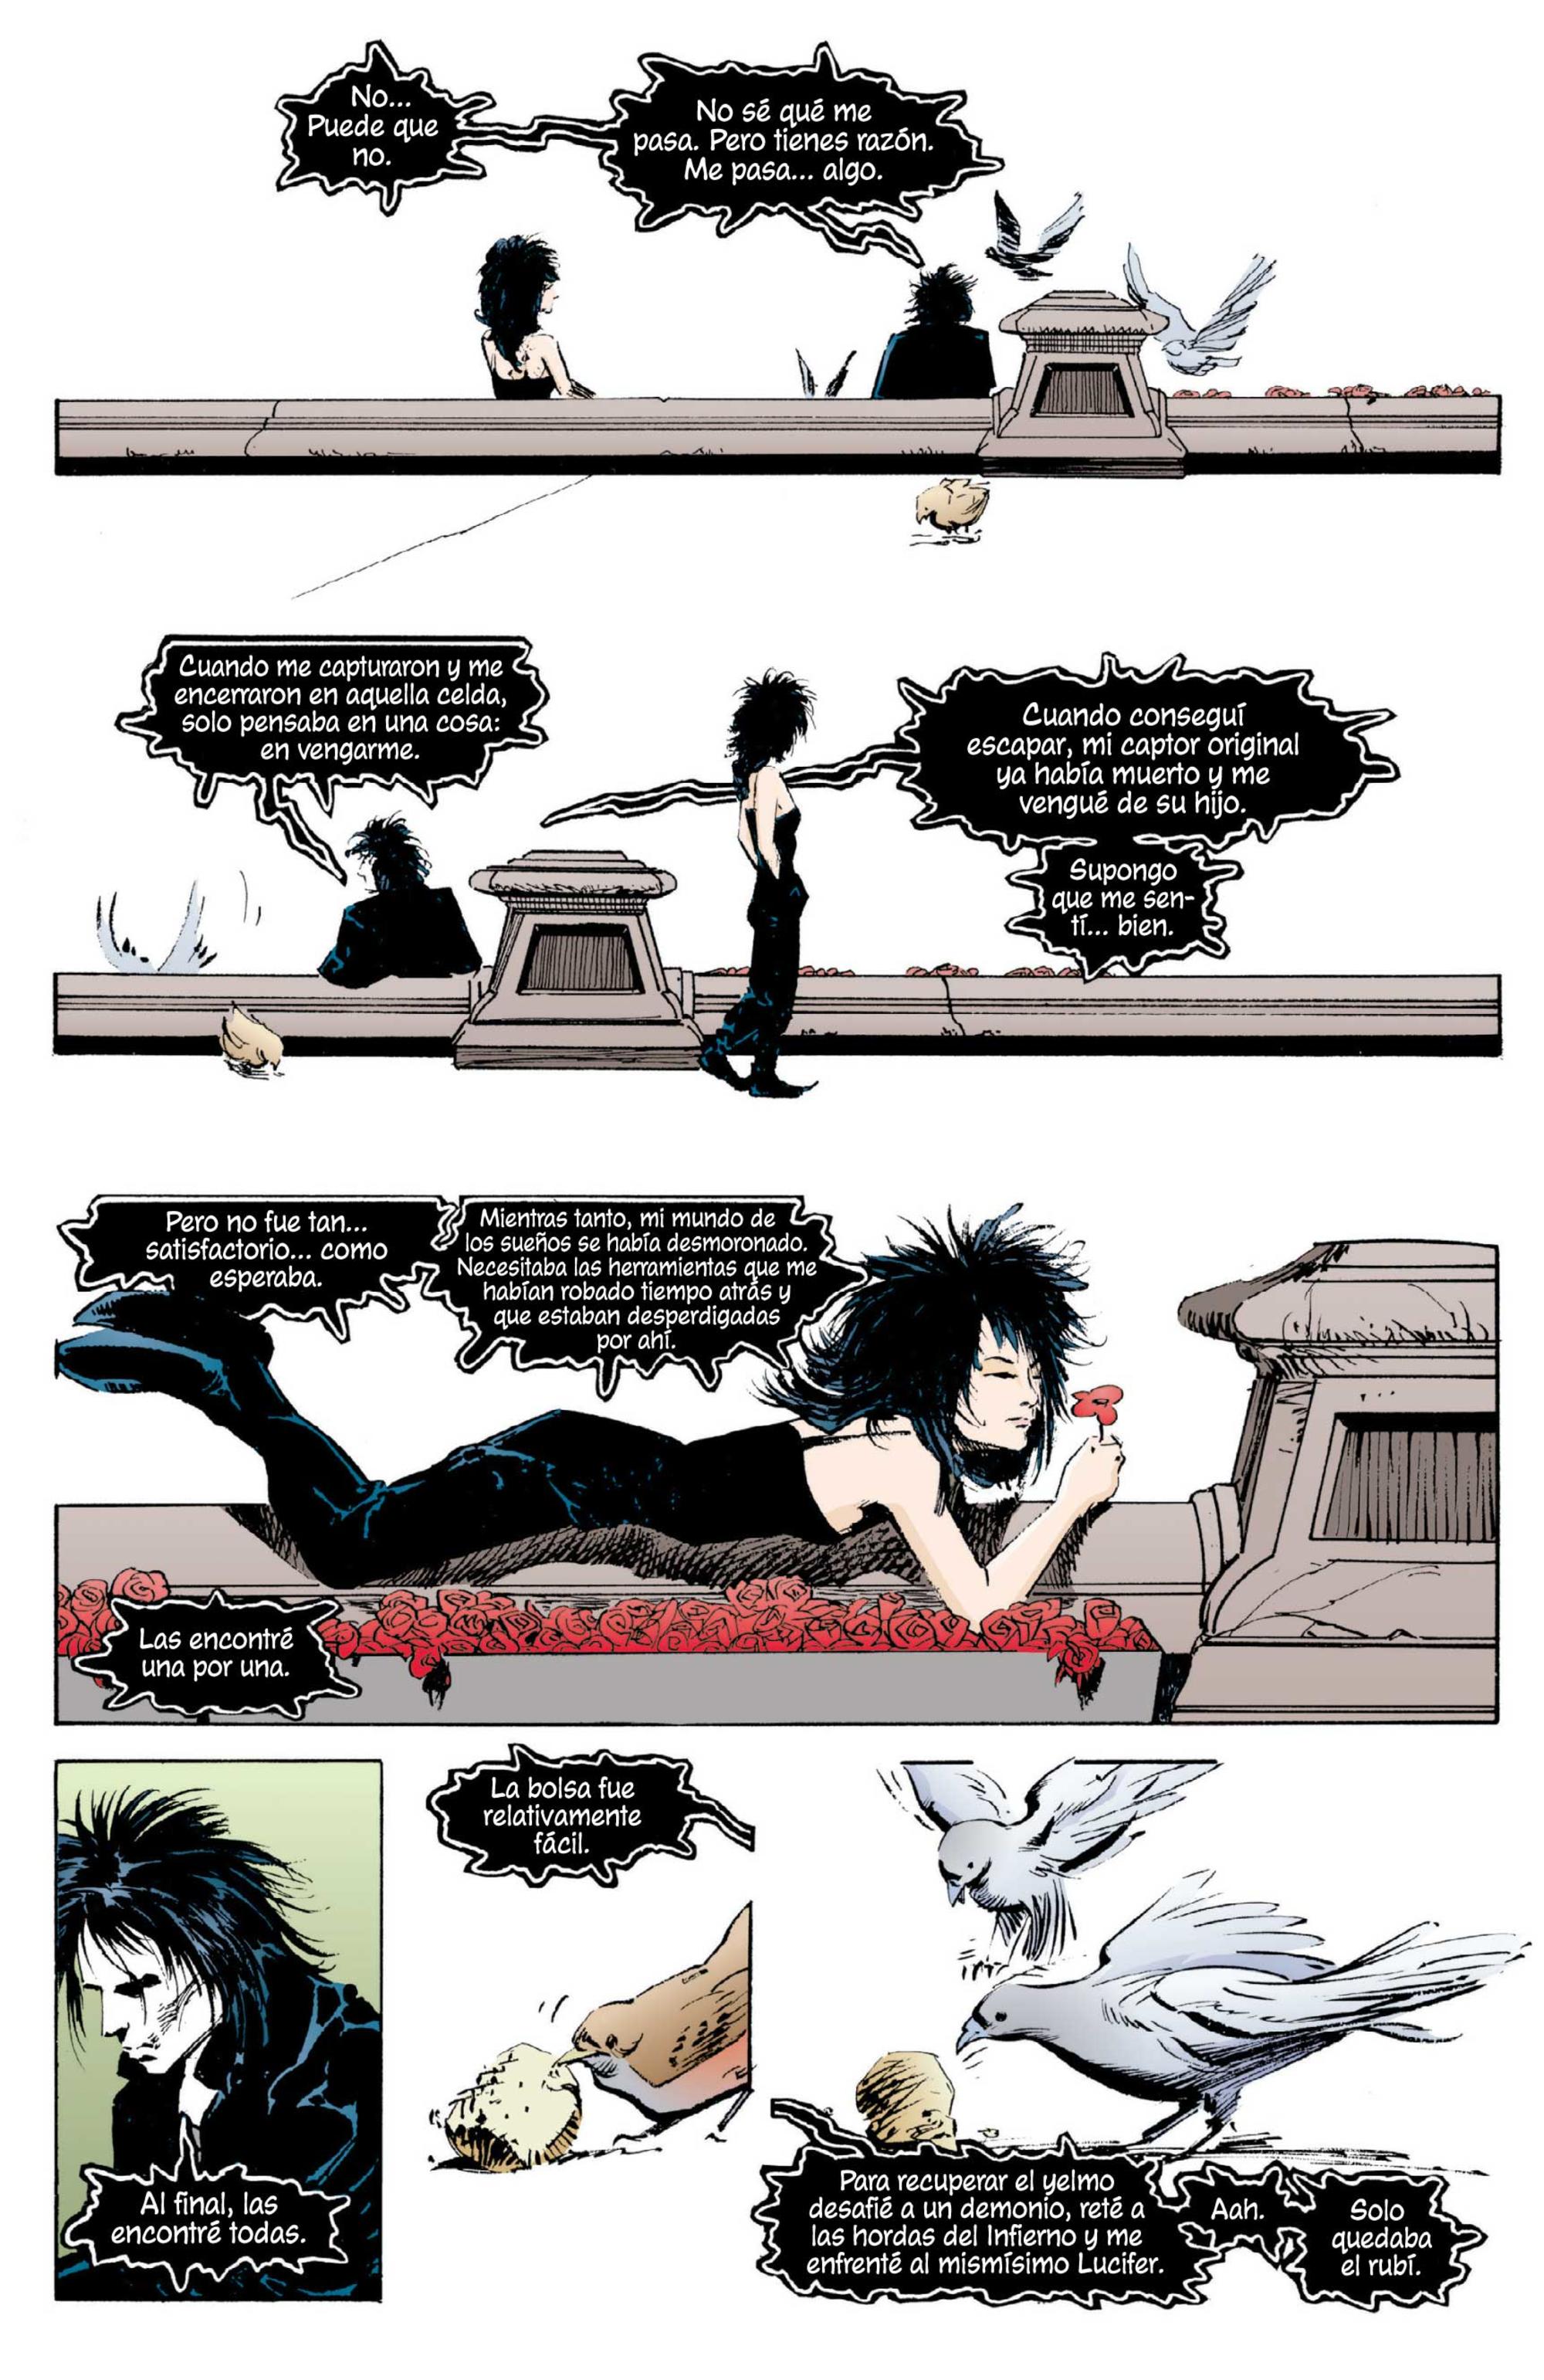 Primera aparición de Muerte en el número ocho de ‘Sandman’